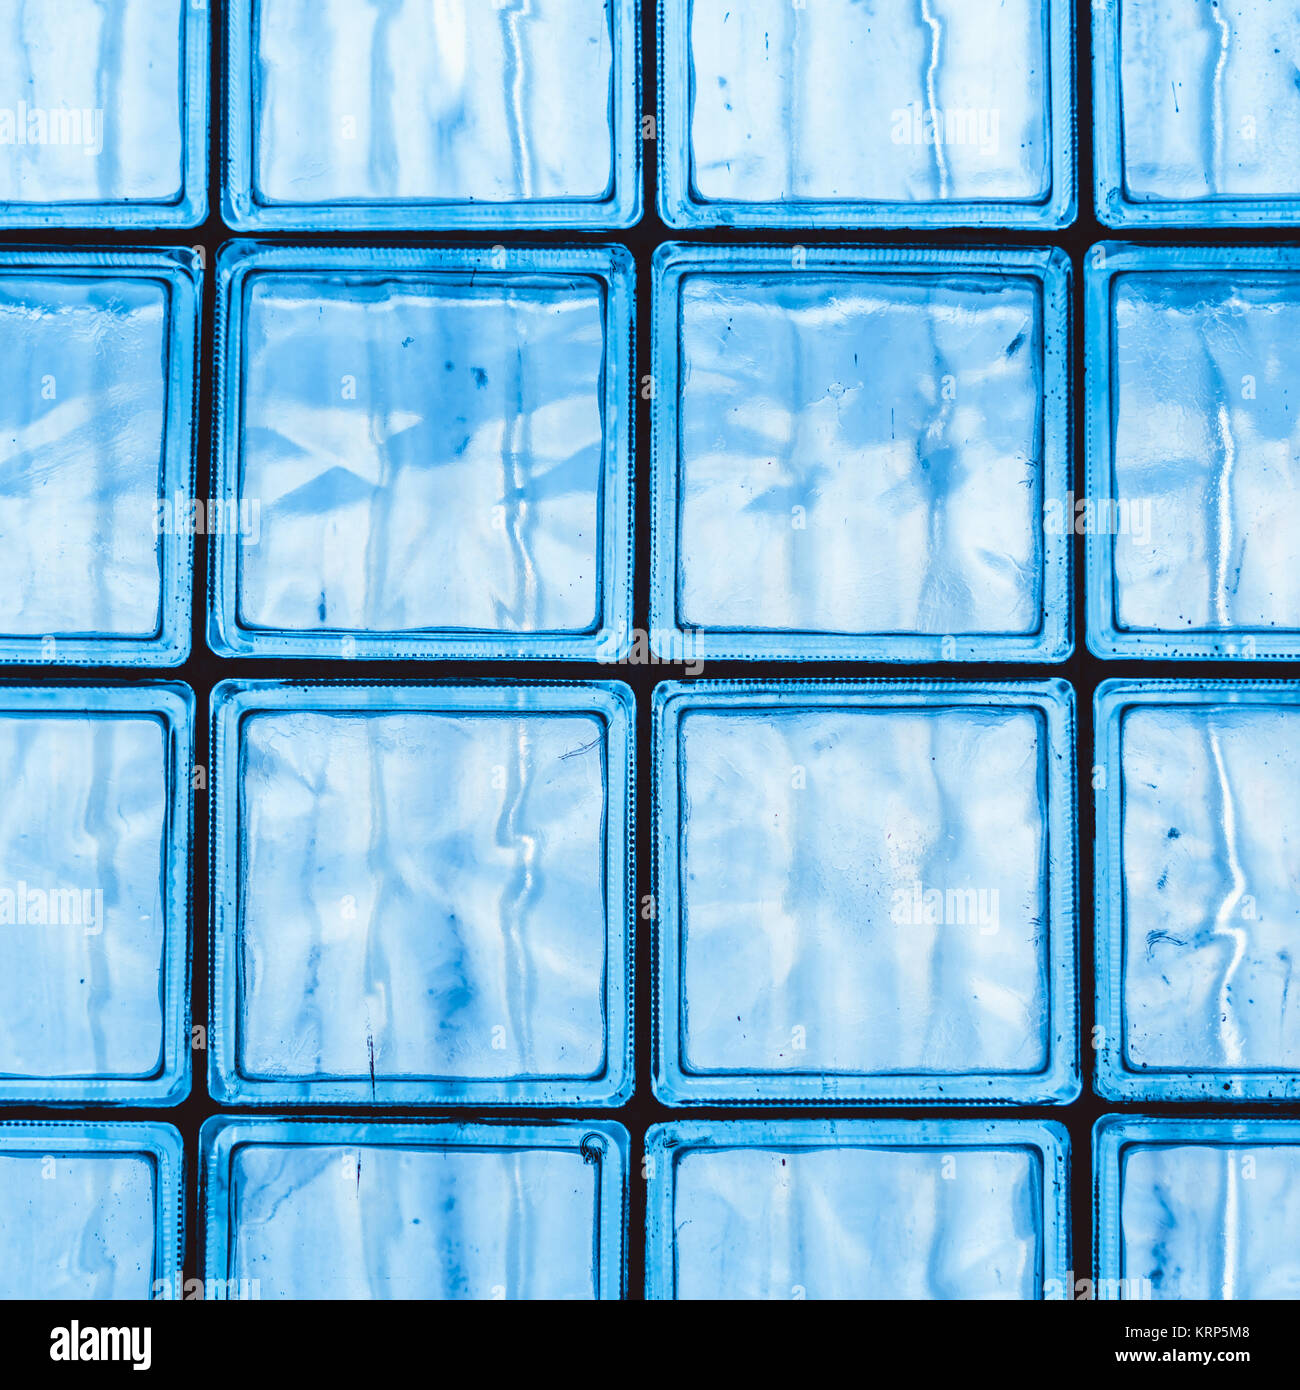 Wand aus transparentem Glas Fliesen als bunte Fenster Hintergrundbild  dienen Stockfotografie - Alamy